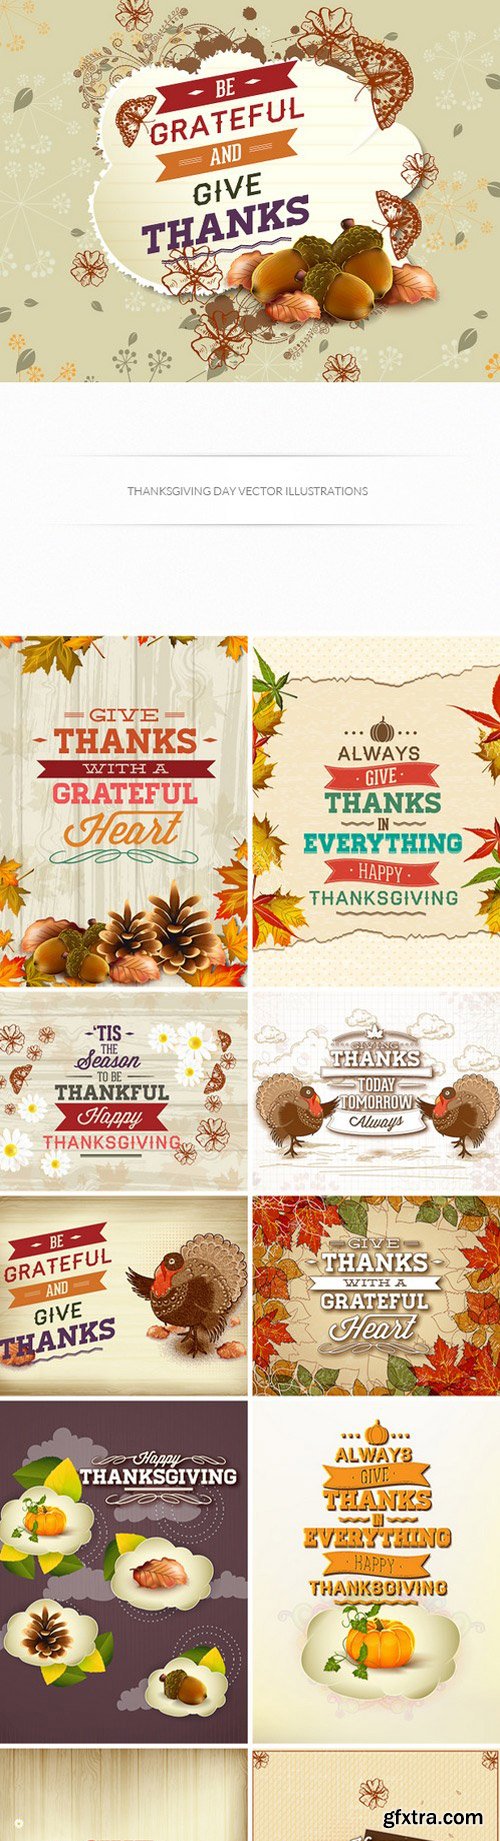 Thanksgiving Vector Illustrations